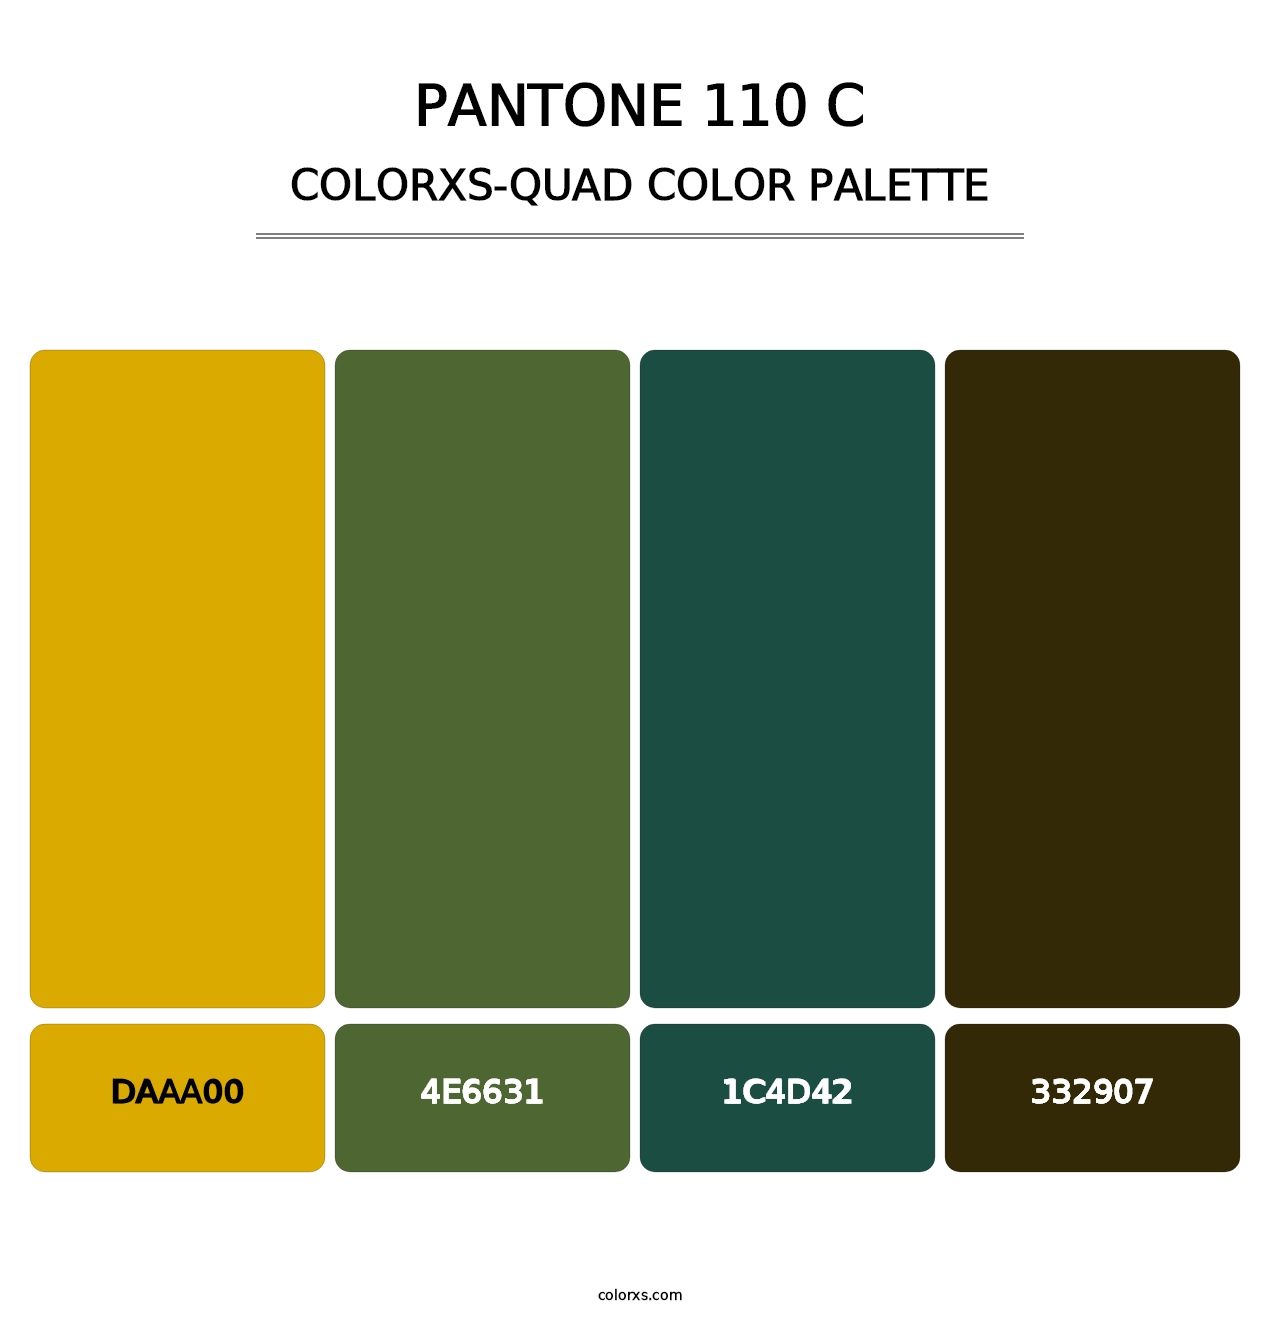 PANTONE 110 C - Colorxs Quad Palette